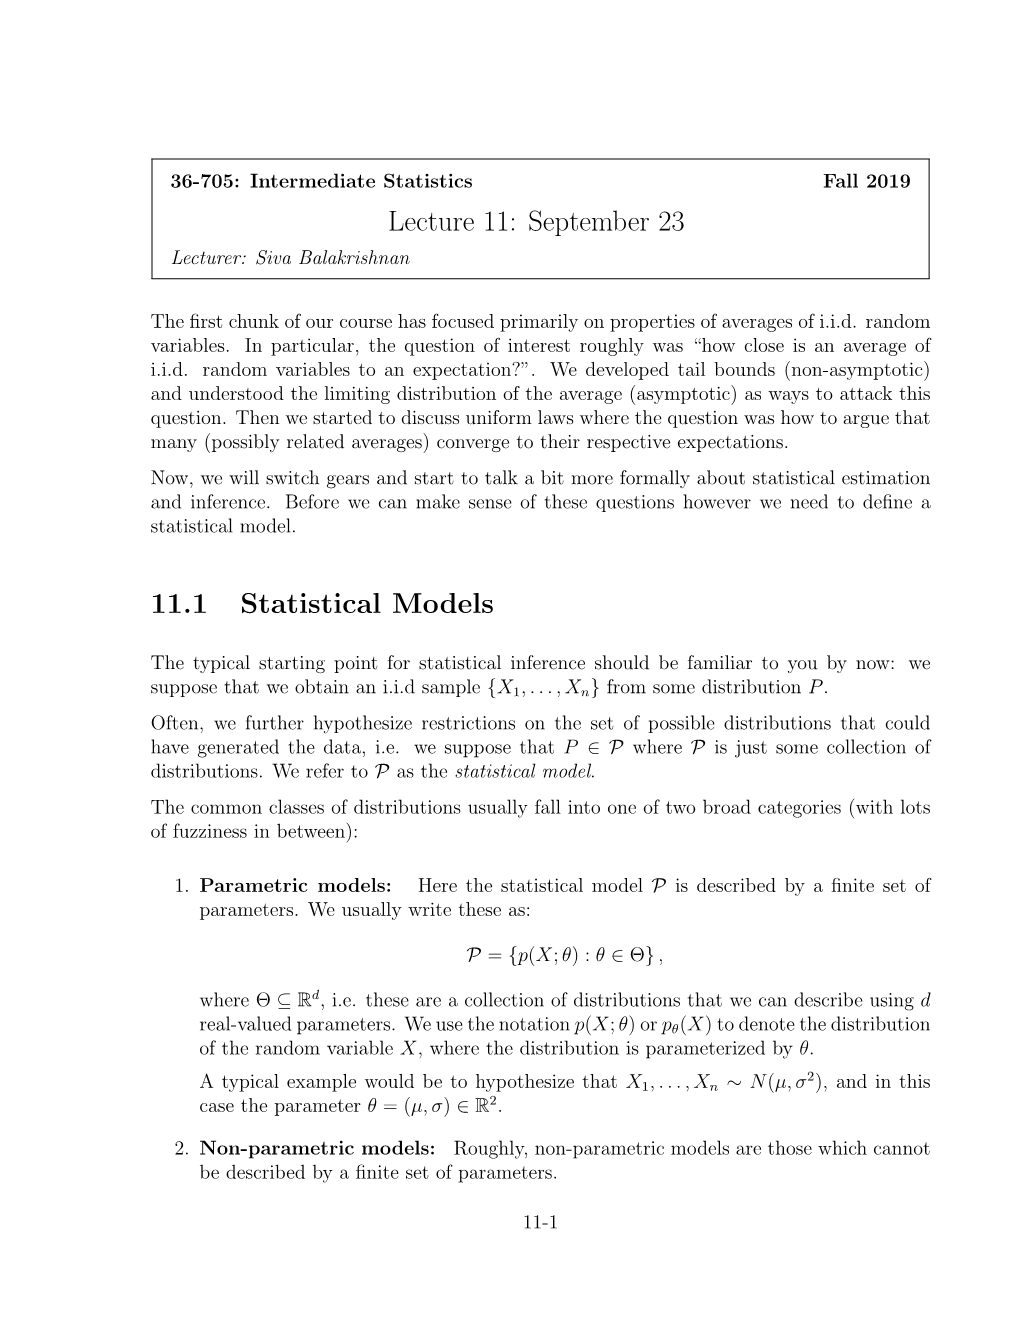 Lecture 11: September 23 11.1 Statistical Models